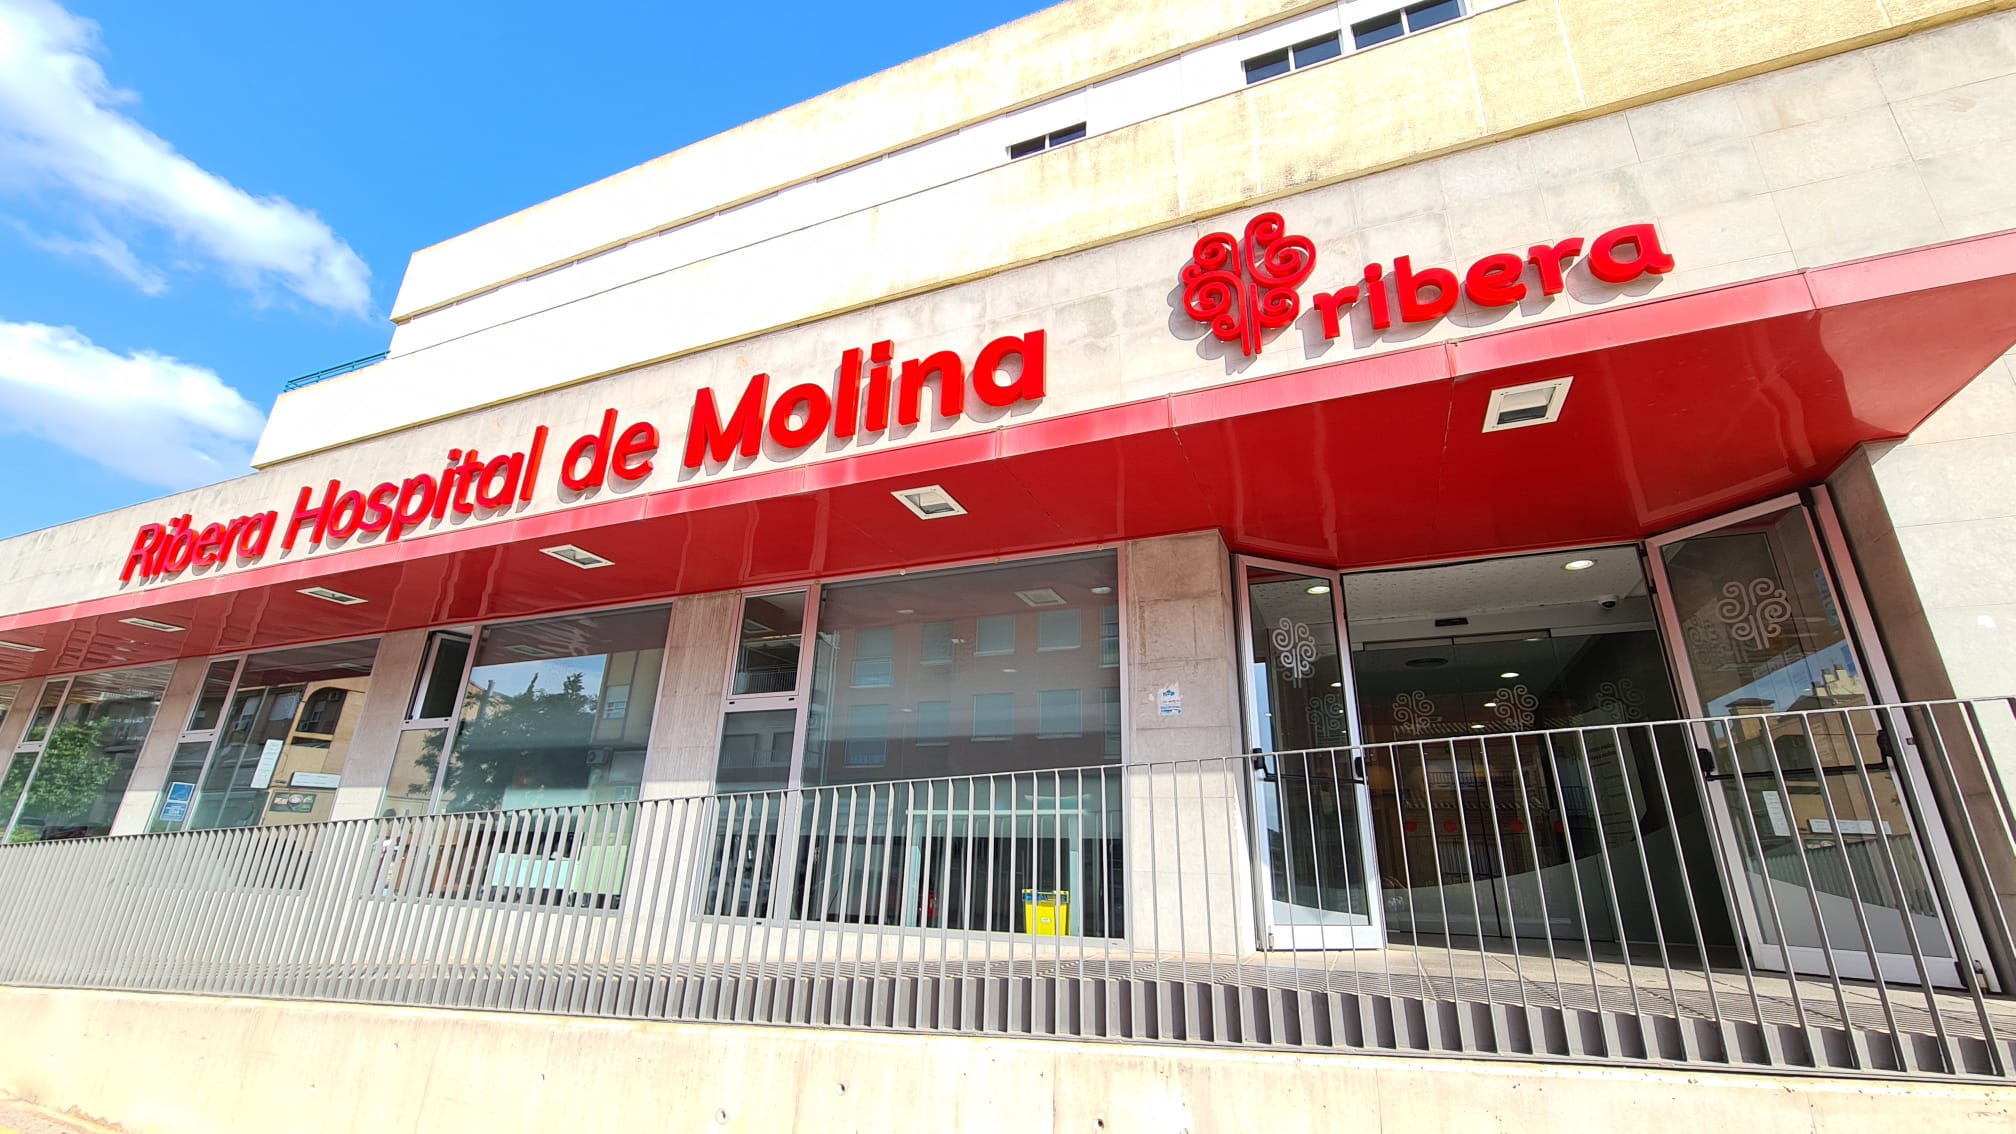 El 100% de los pacientes atendidos Hospital de Molina volvería a elegirlo